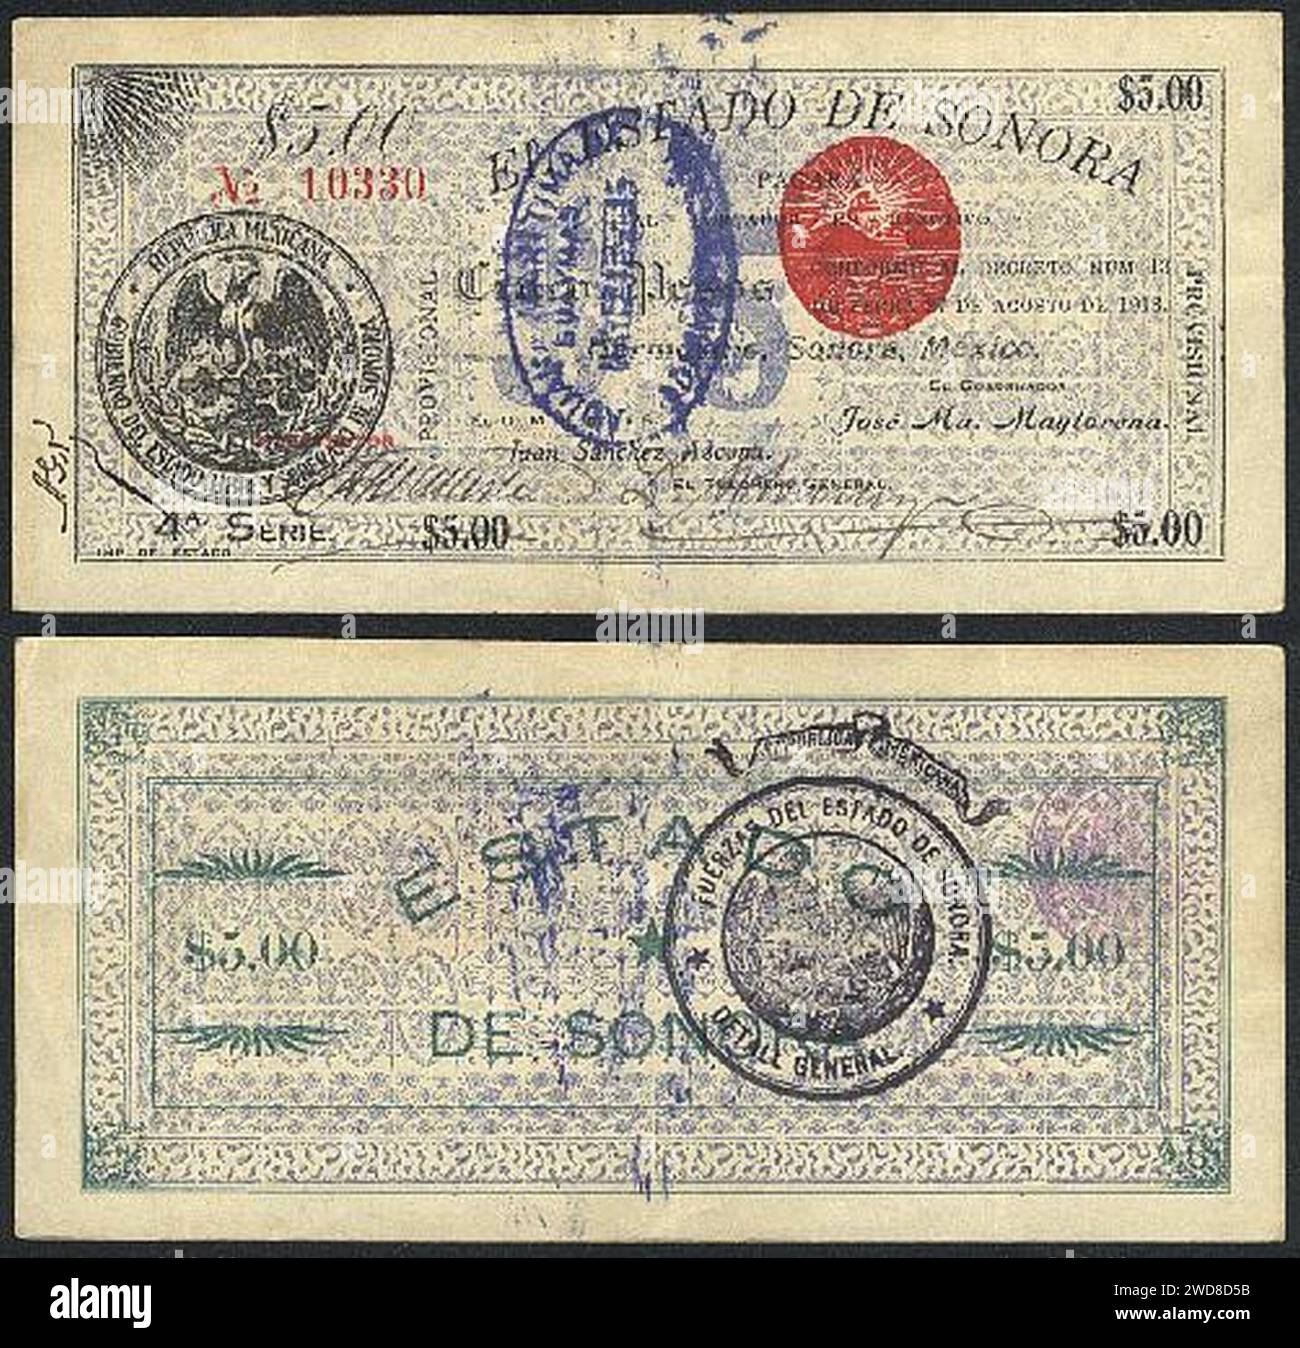 5 pesos - Stato di Sonora (periodo rivoluzionario) qualsiasi cosa ovunque. Foto Stock